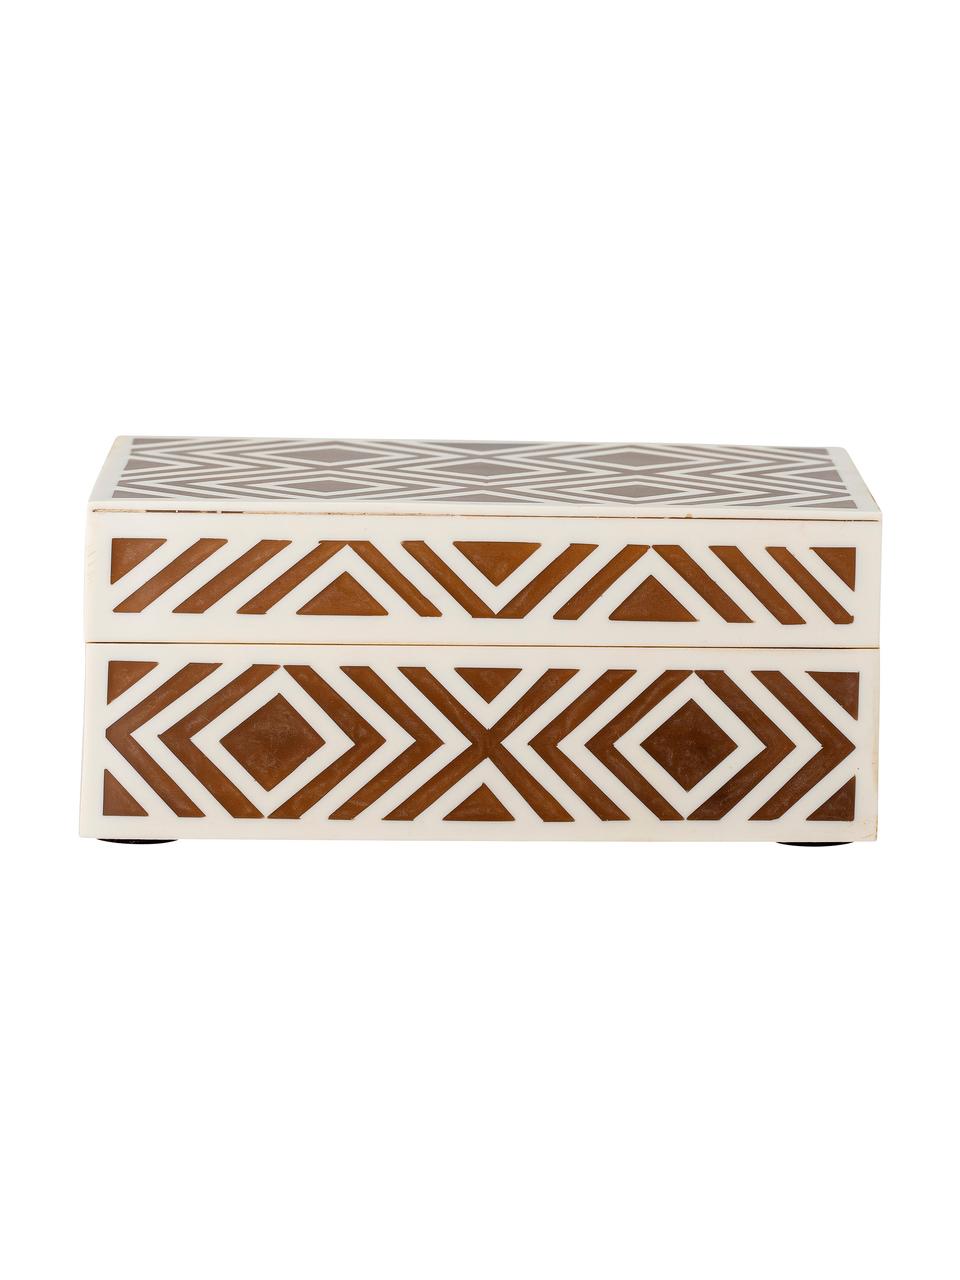 Schmuckbox Henny, Mitteldichte Holzfaserplatte (MDF), Polyresin beschichtet, Braun, Cremeweiß, 18 x 8 cm